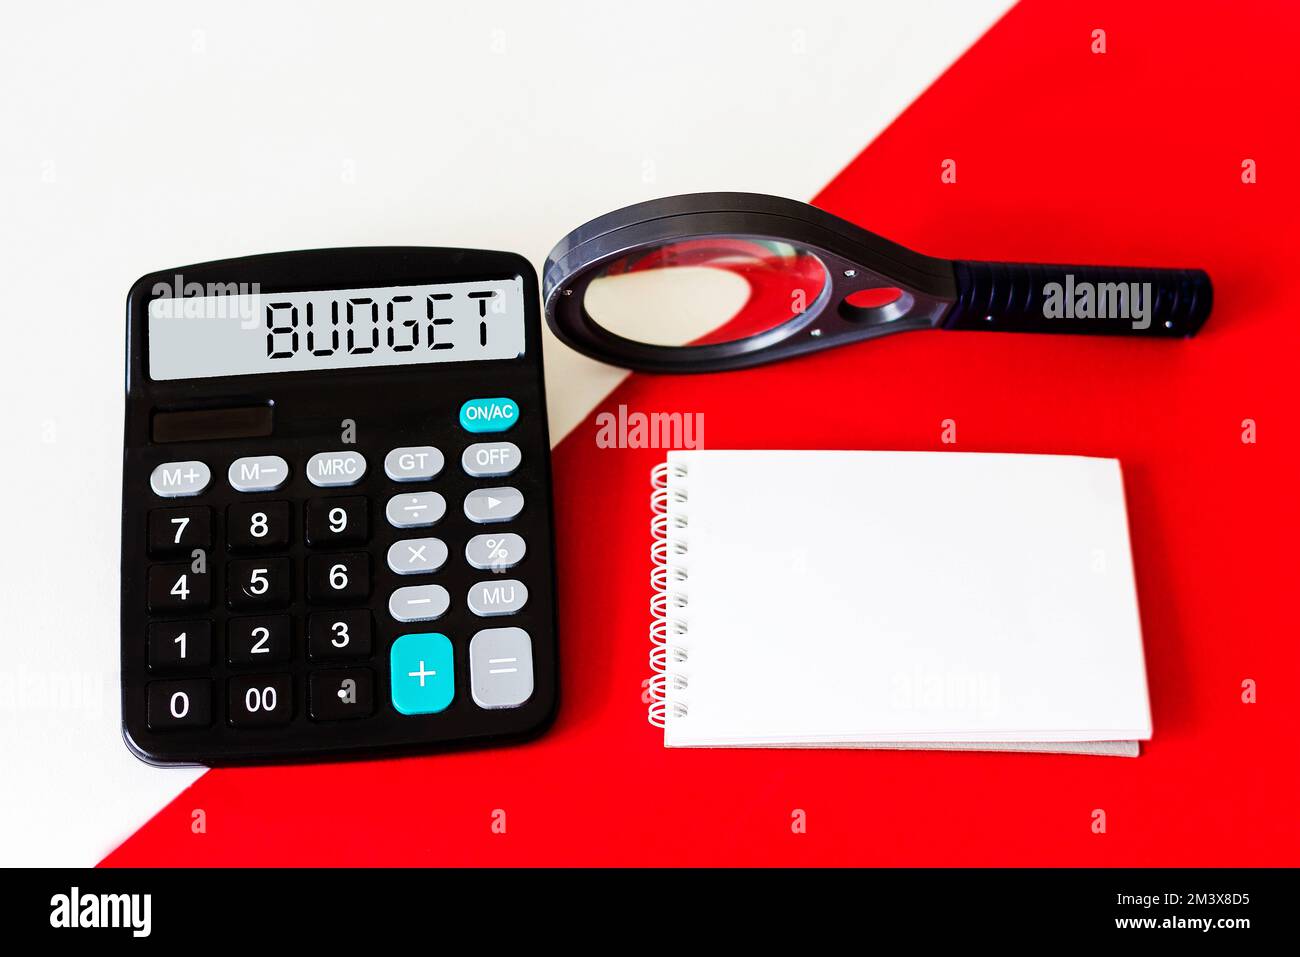 Rechner mit dem Wort BUDGET auf dem Display. Vergrößerungsglas und Notizblock auf rot-weißem Hintergrund. Konzeptfoto Stockfoto